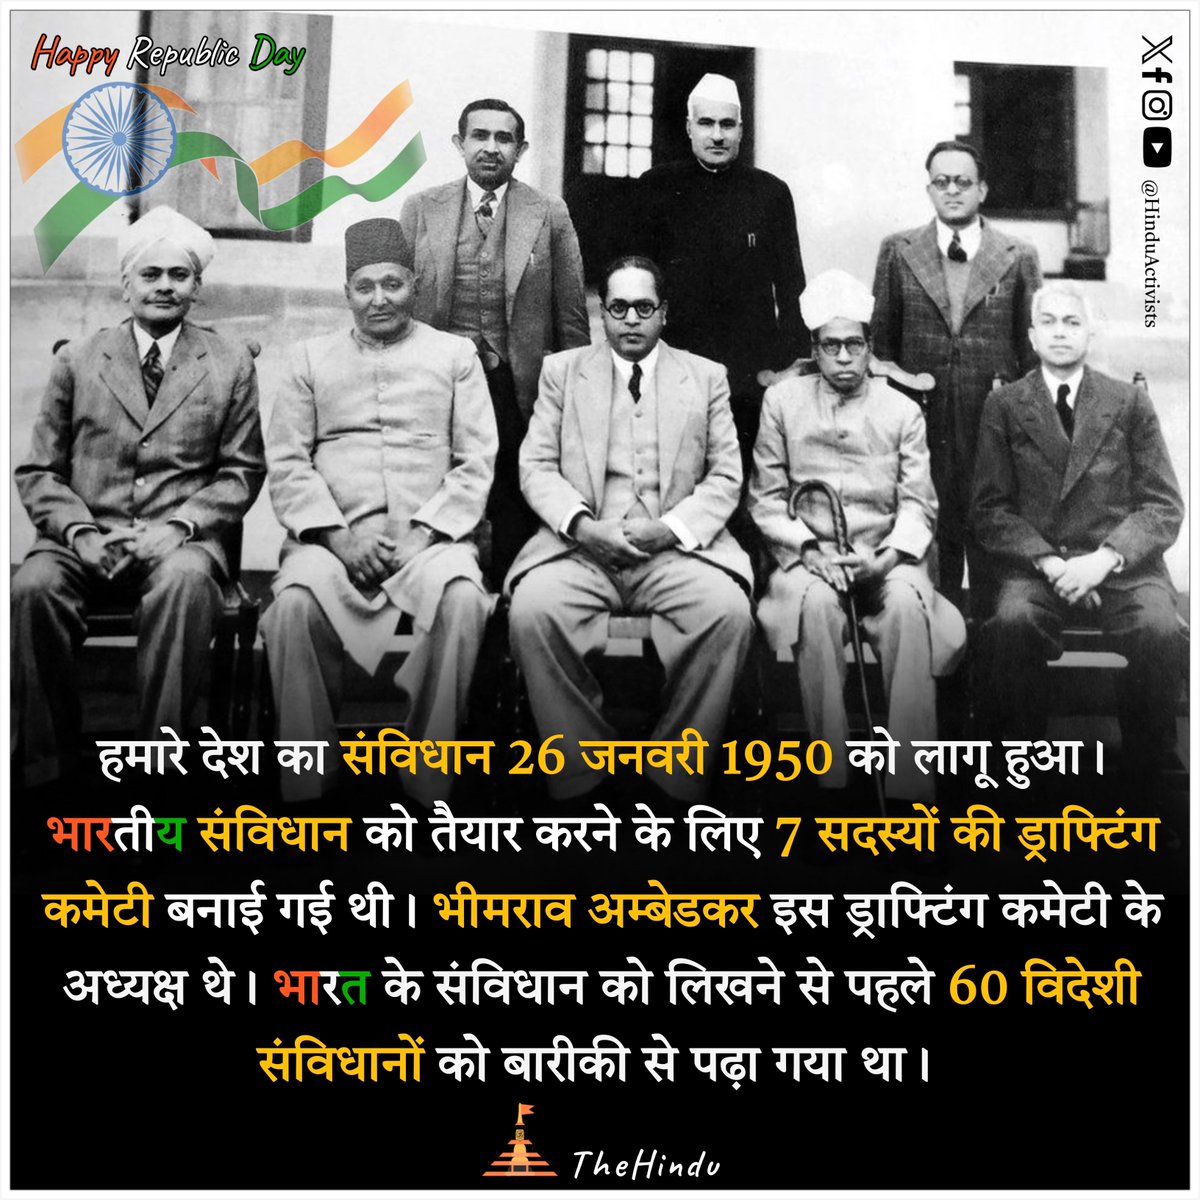 हमारे देश का संविधान 26 जनवरी 1950 को लागू हुआ। भारतीय संविधान को तैयार करने के लिए 7 सदस्यों की ड्राफ्टिंग कमेटी बनाई गई थी। भीमराव अम्बेडकर इस ड्राफ्टिंग कमेटी के अध्यक्ष थे। 

#RepublicDay #republicindia #IndianRepublicDay #IndianConstitution #ConstitutionOfIndia #preamble